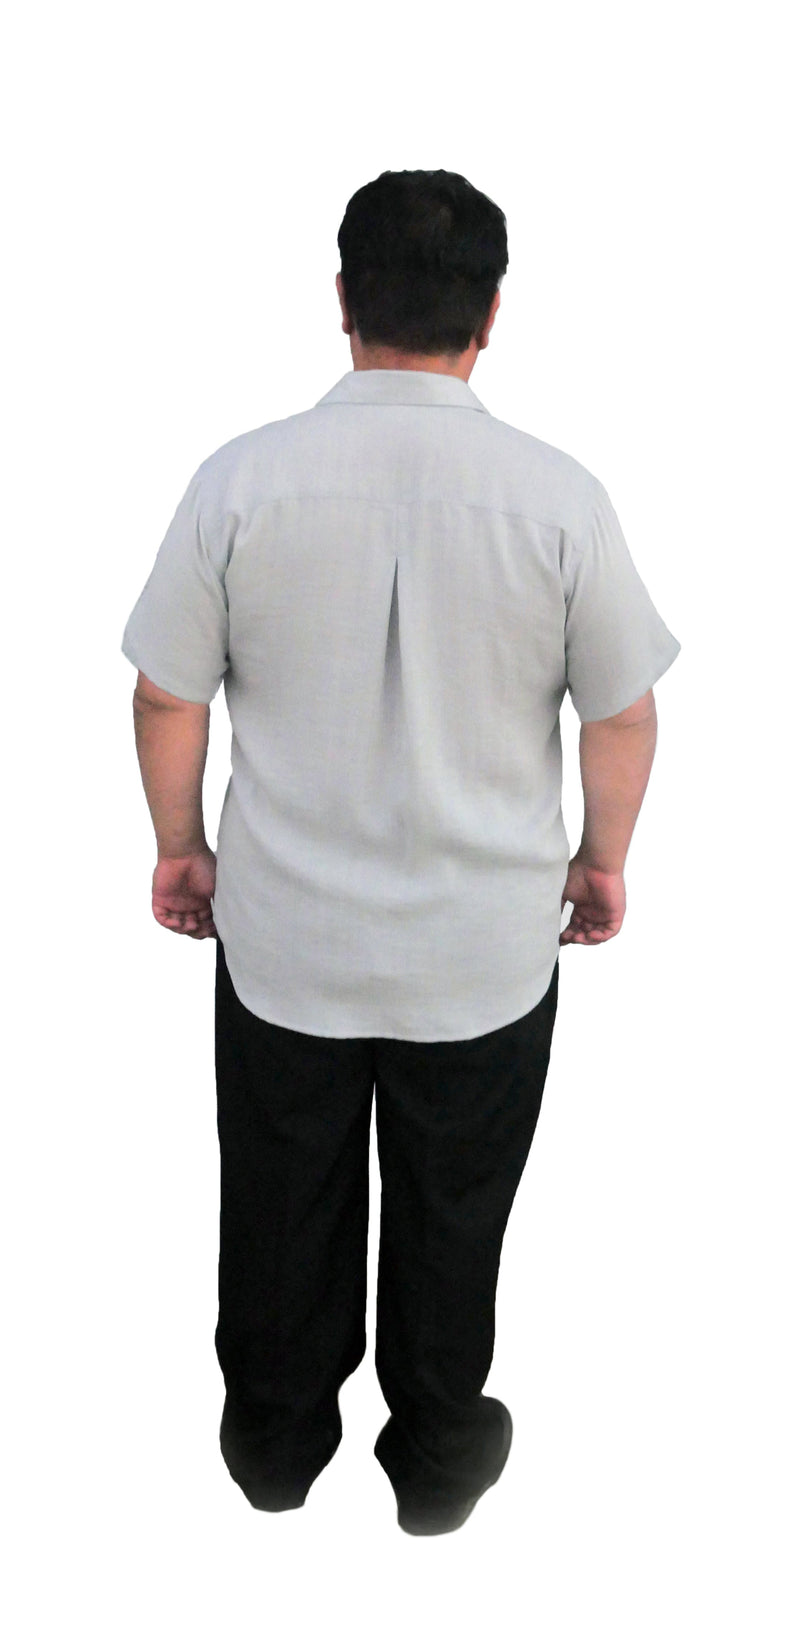 Fridaze Wrinkle-Resistant 100% Linen Men’s Shirt, Relaxed Fit, Short Sleeve - AA9305